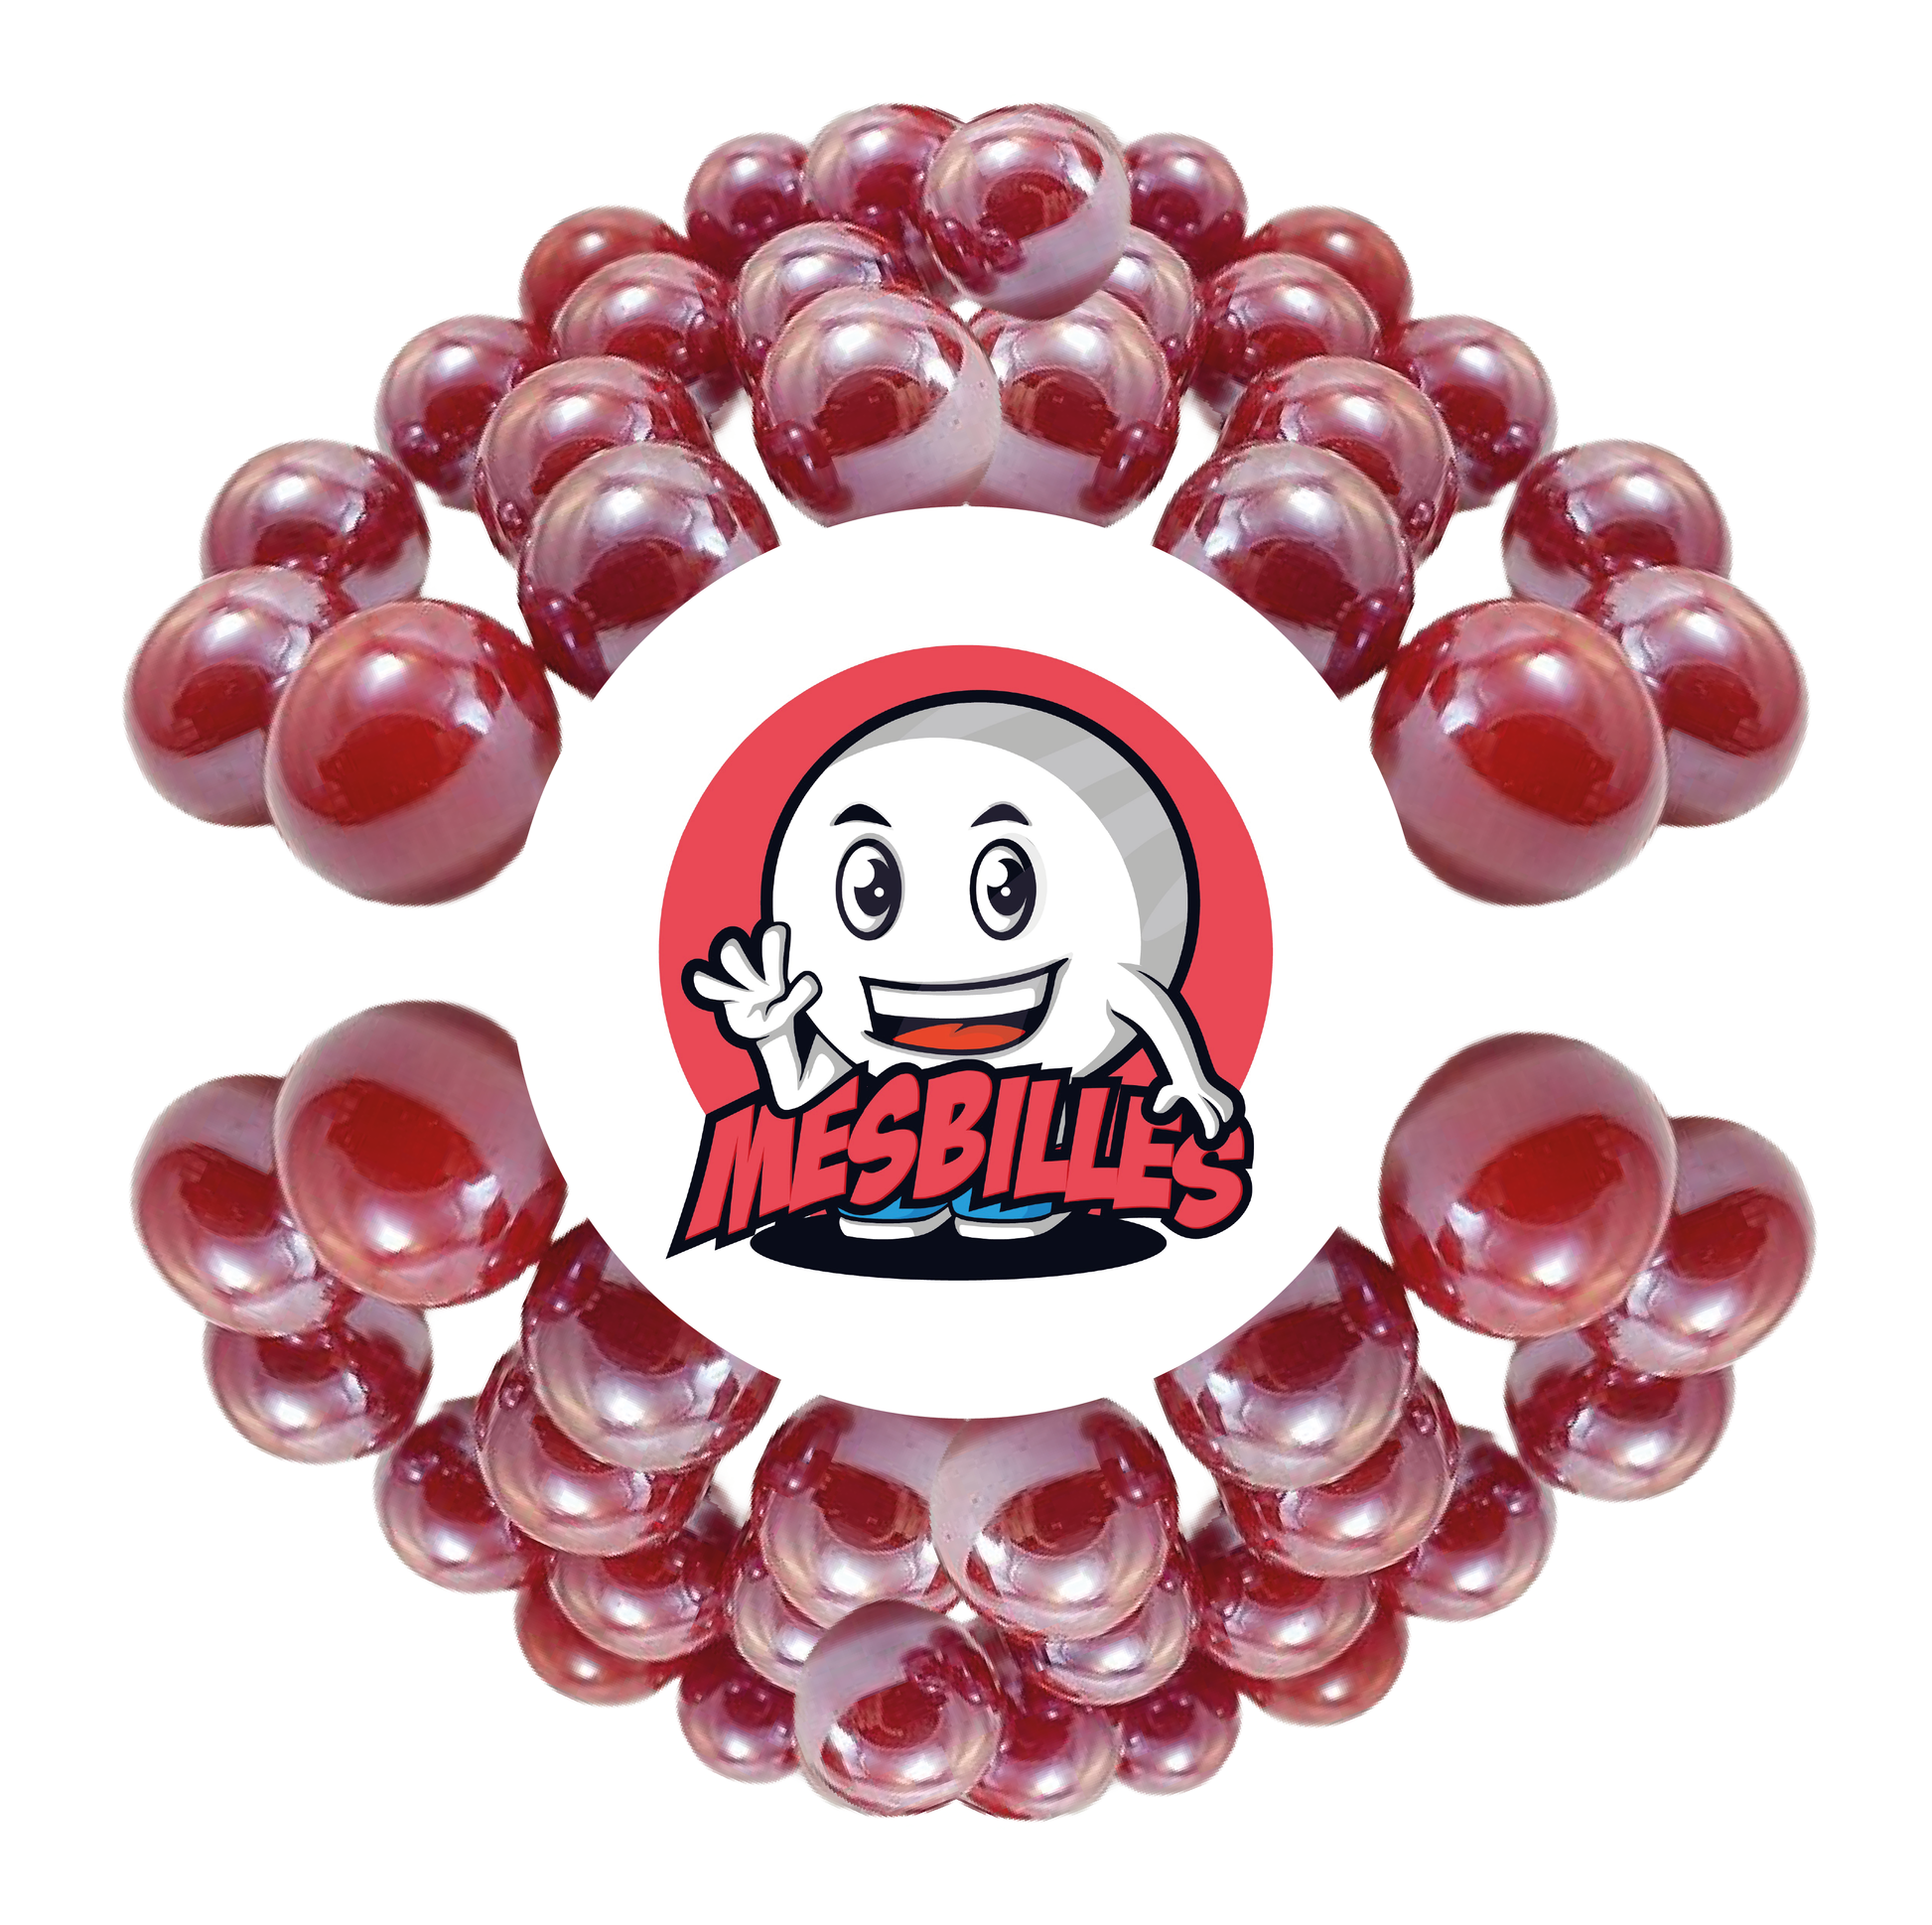 Image de la Mascotte MesBilles entourée de Billes Glossy 22 mm - Verre Opaque et Brillant Rouge